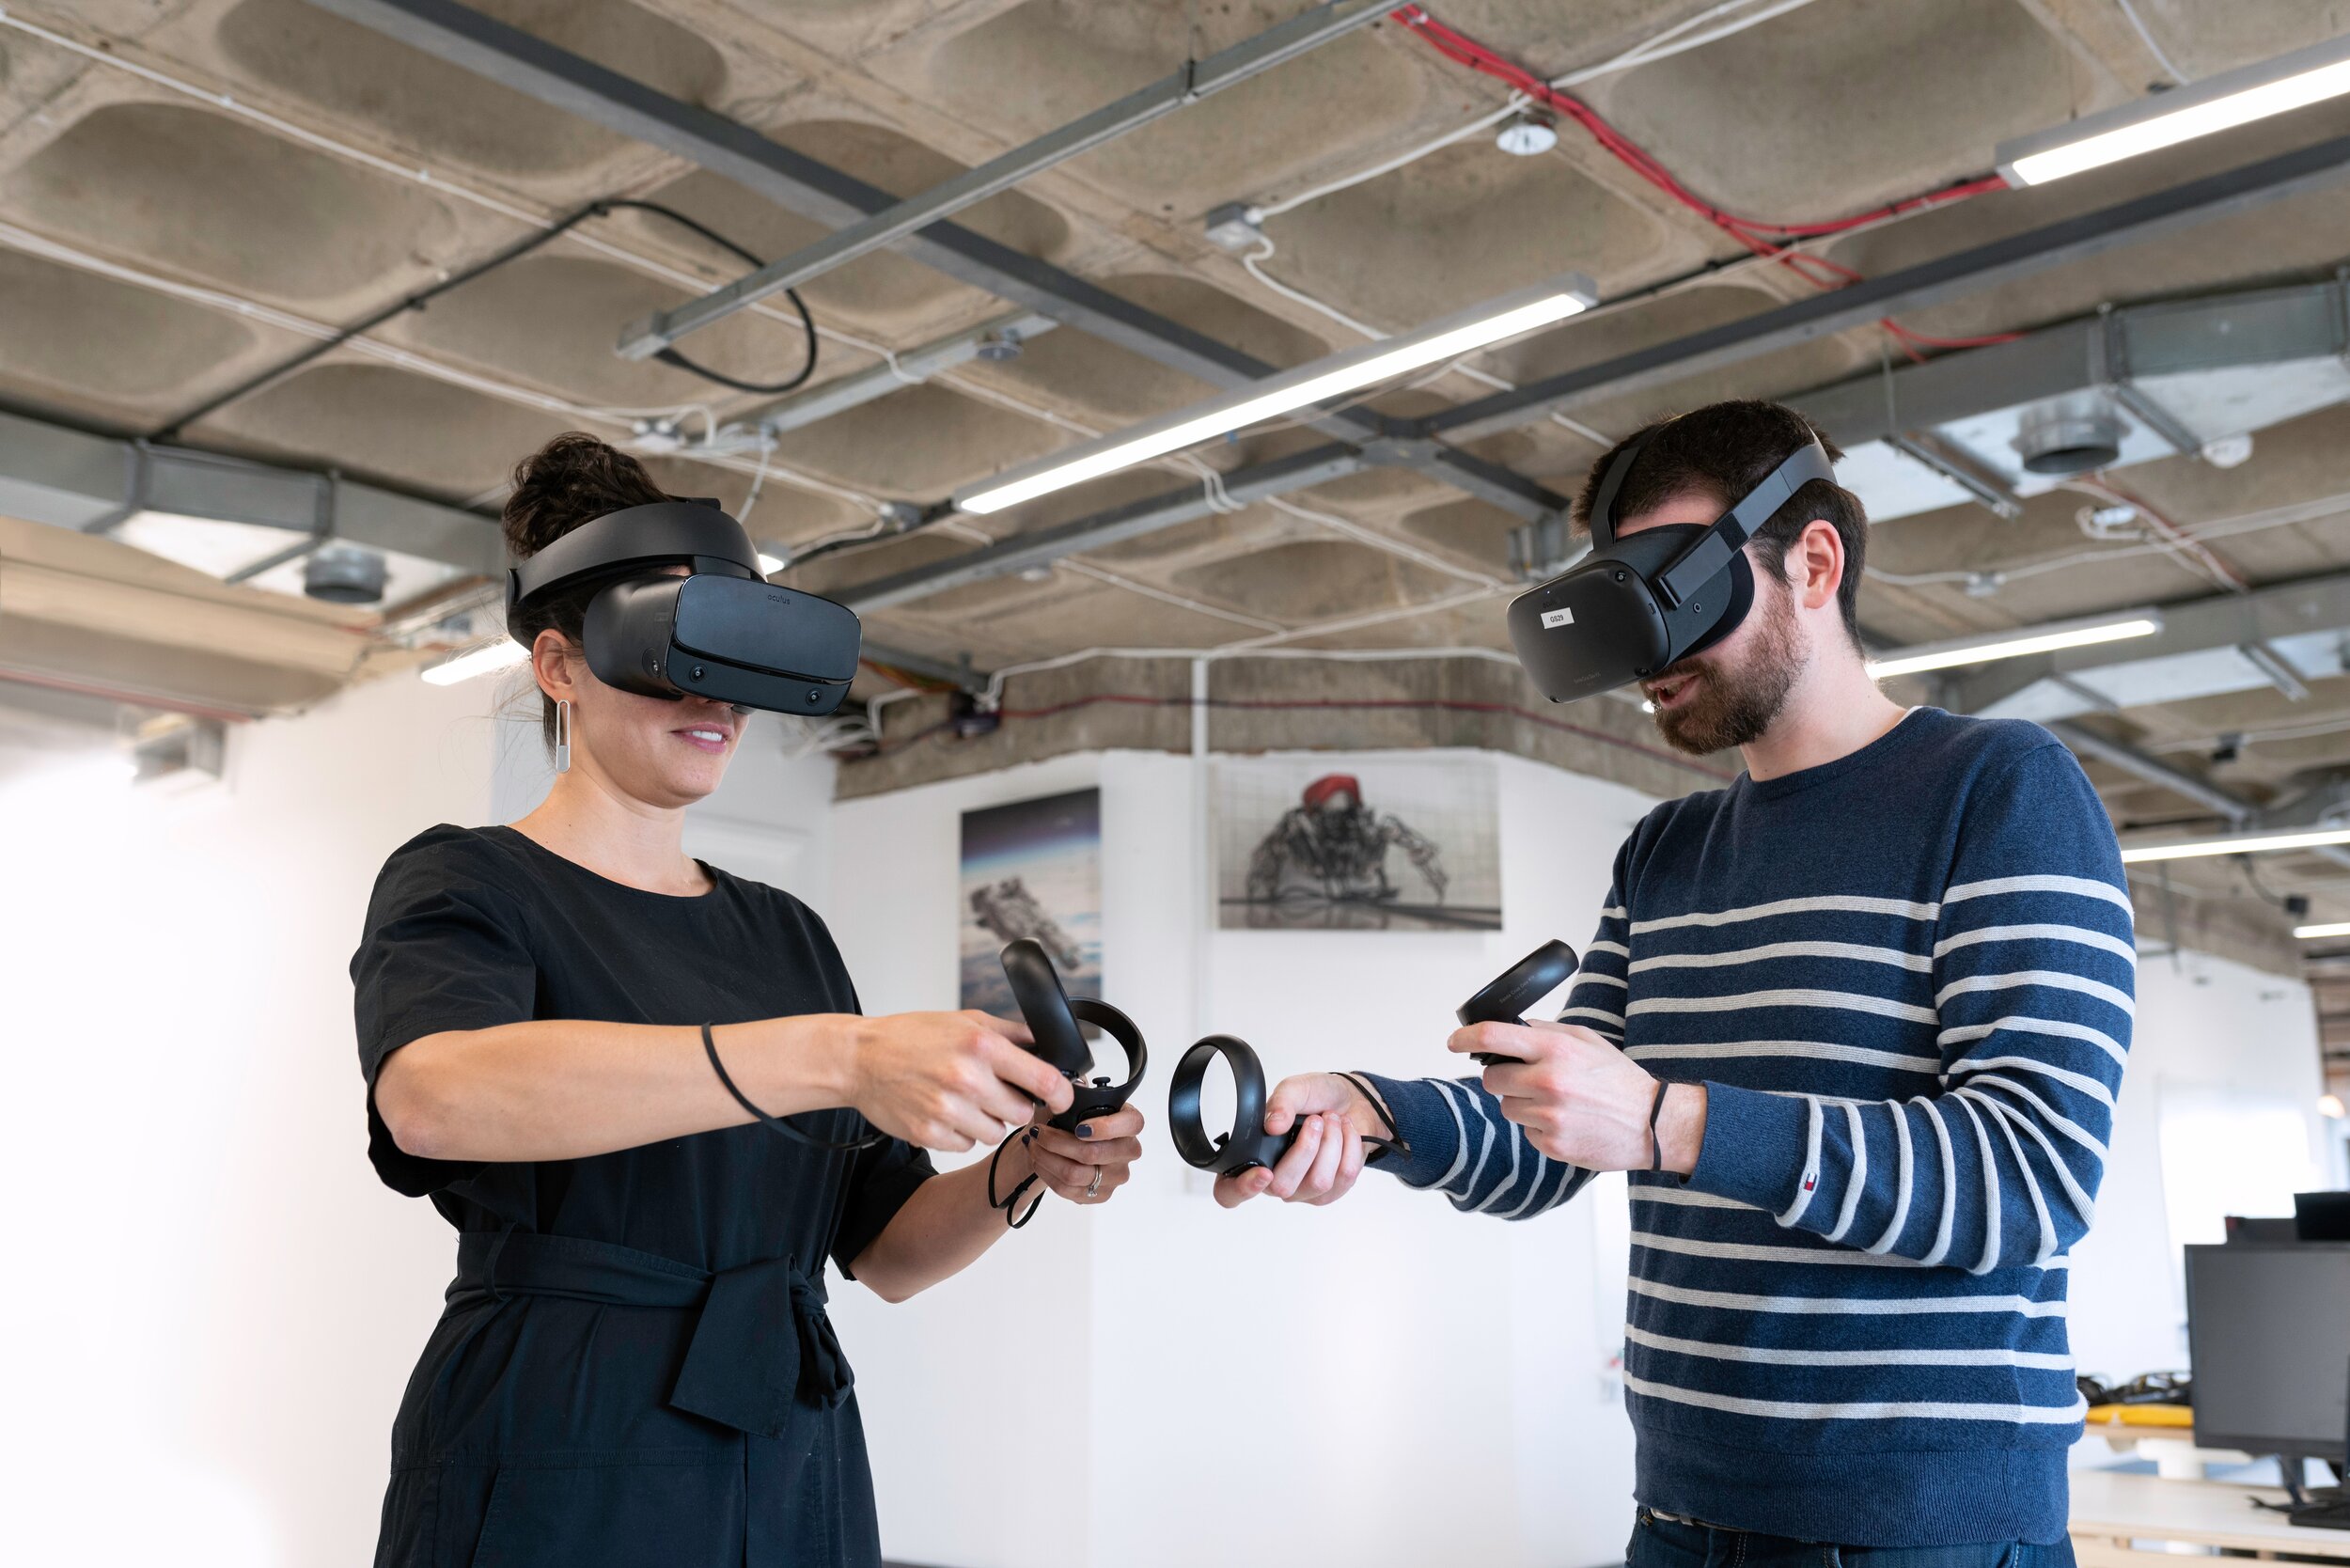 Чед последняя реальность. Технологии виртуальной реальности. Технологии виртуальной и дополненной реальности. Очки виртуальной реальности в промышленности. VR реальность.